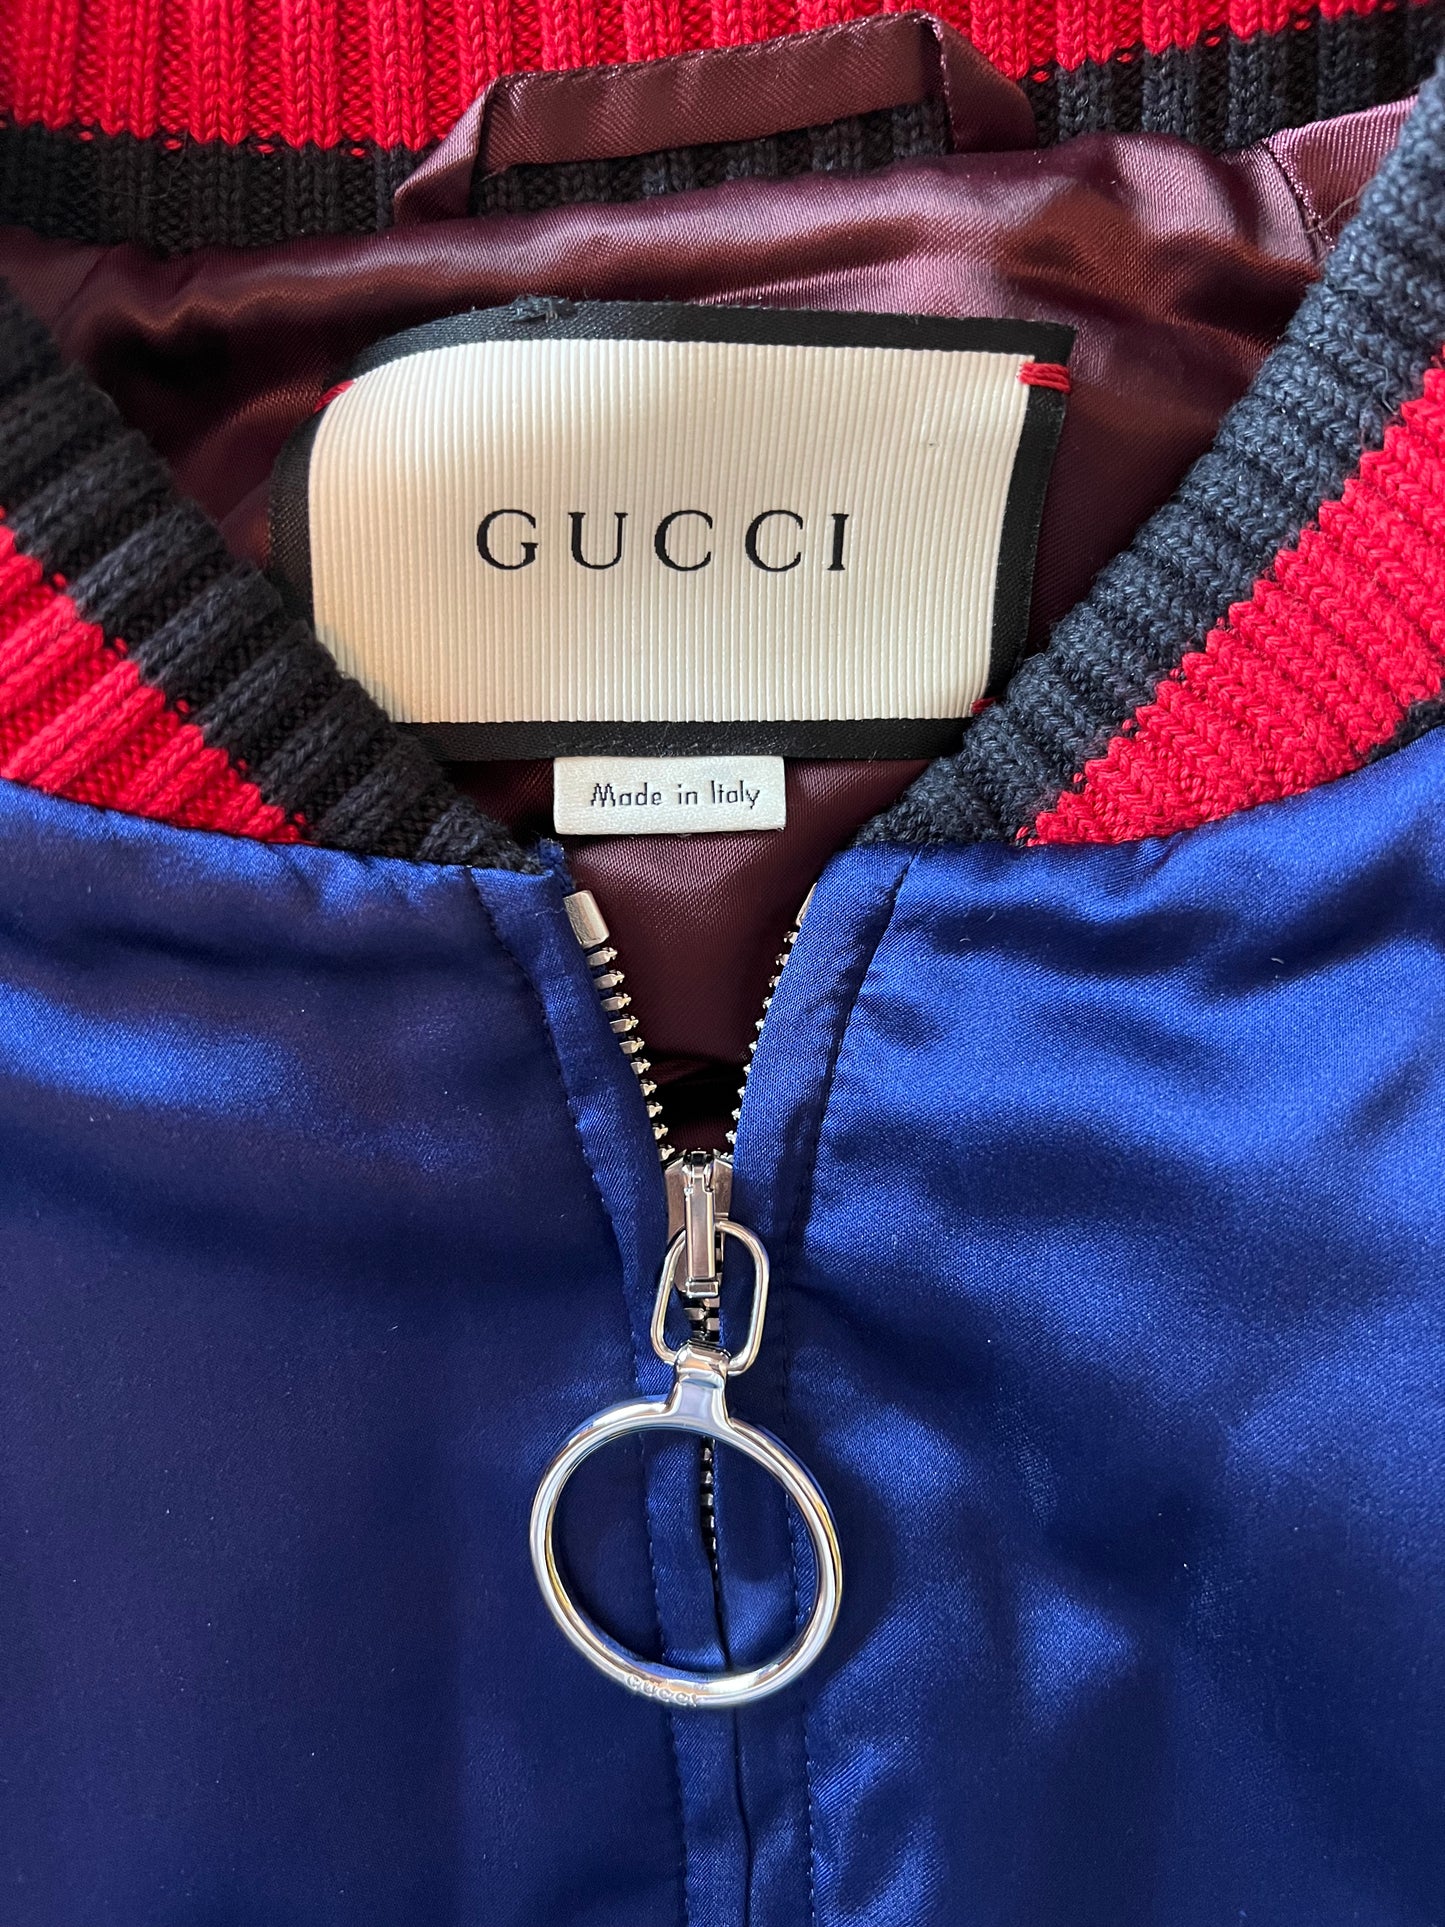 Gucci Silk Blend Crystal Embellished Size 44 Bomber Jacket